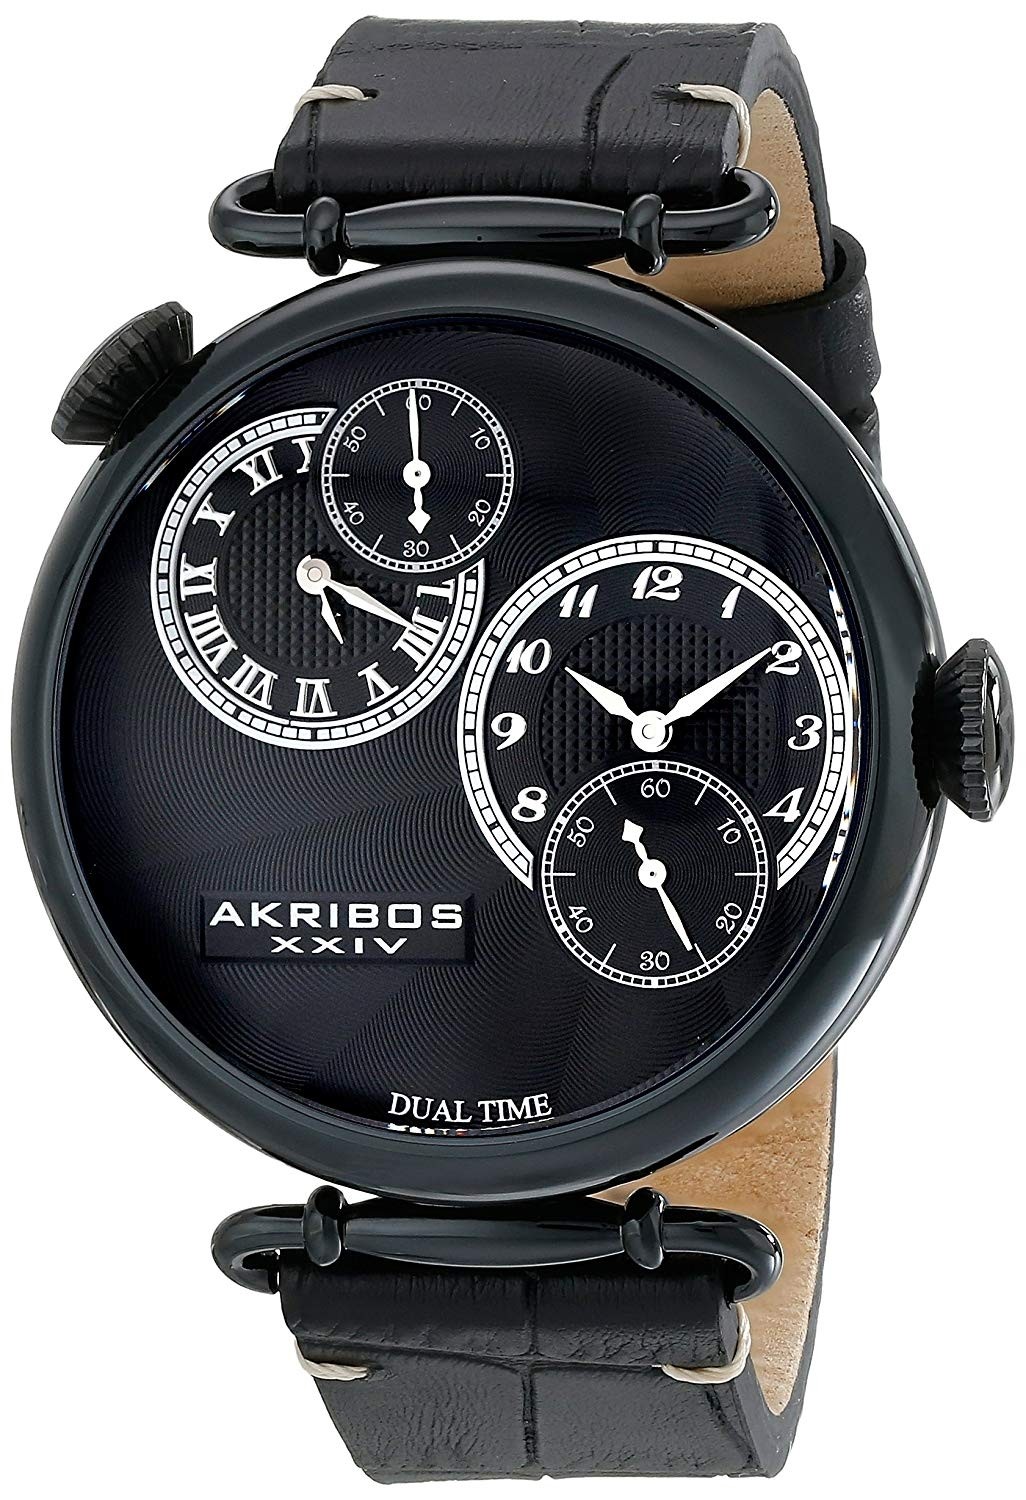 Akribos XXIV Dual Time Black Dial Men's Watch AK796BK